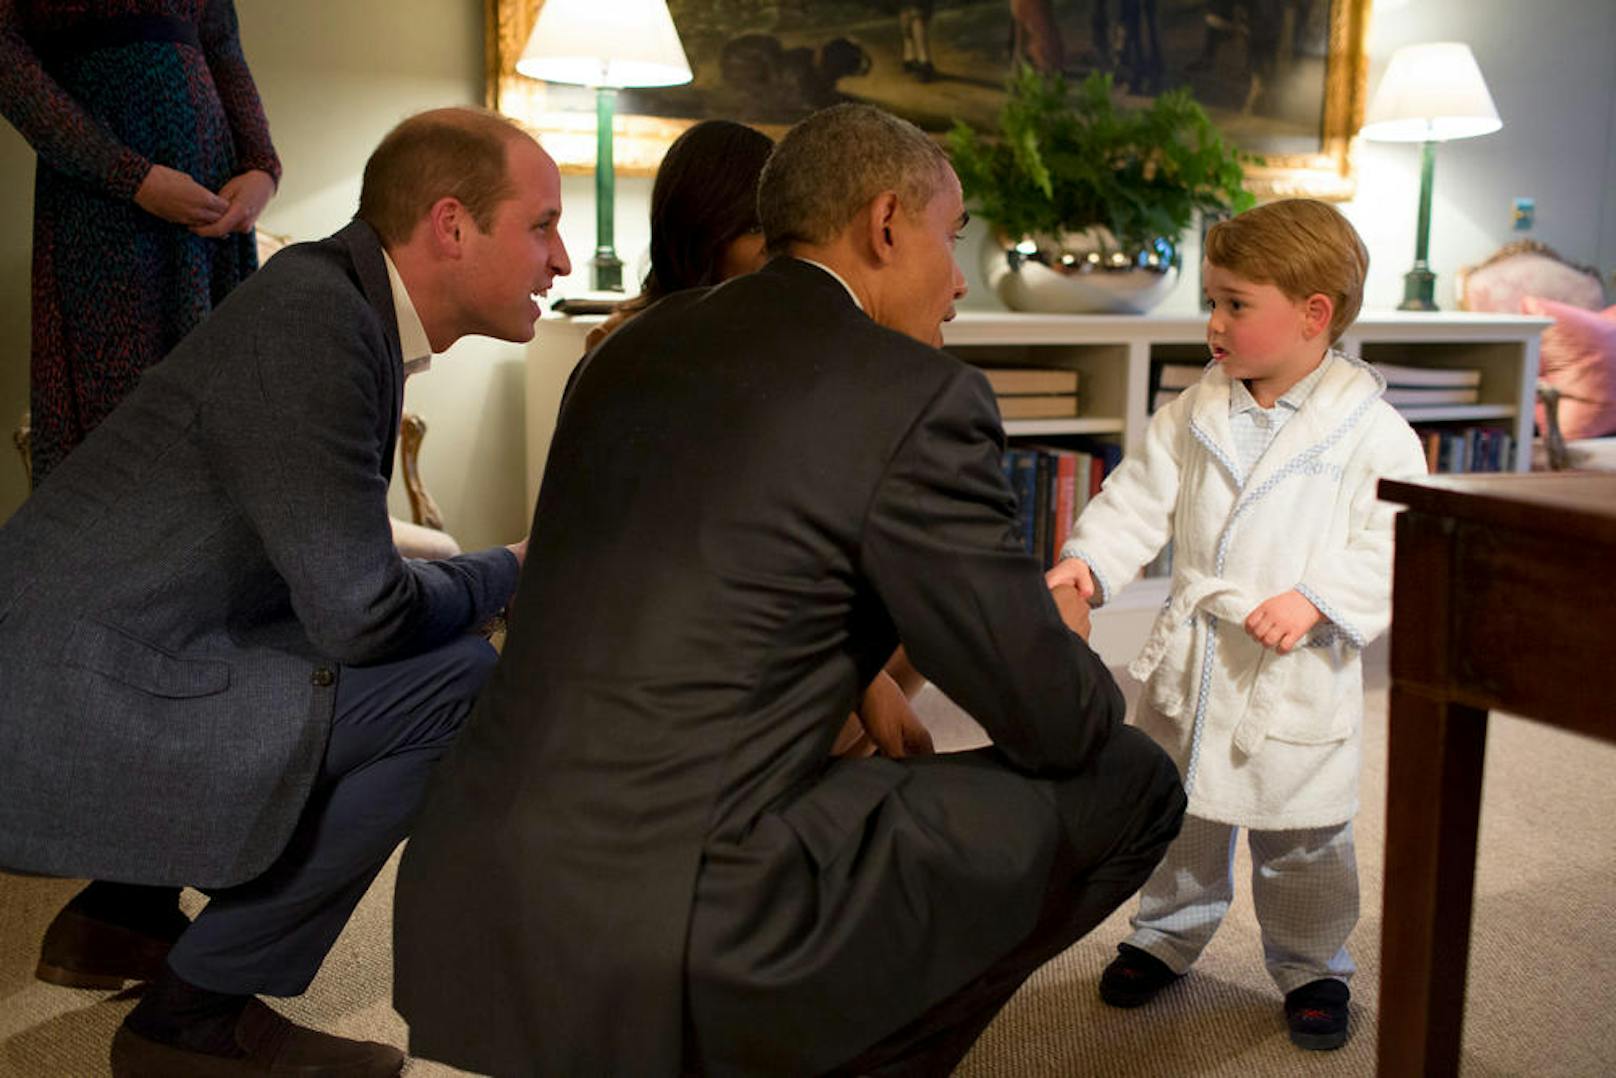 Staatstragend: Prinz George durfte länger aufbleiben, als die Obamas zu Besuch kamen. Im Morgenmantel empfing er Michelle und Barack, damals das Präsidentenpaar der USA.